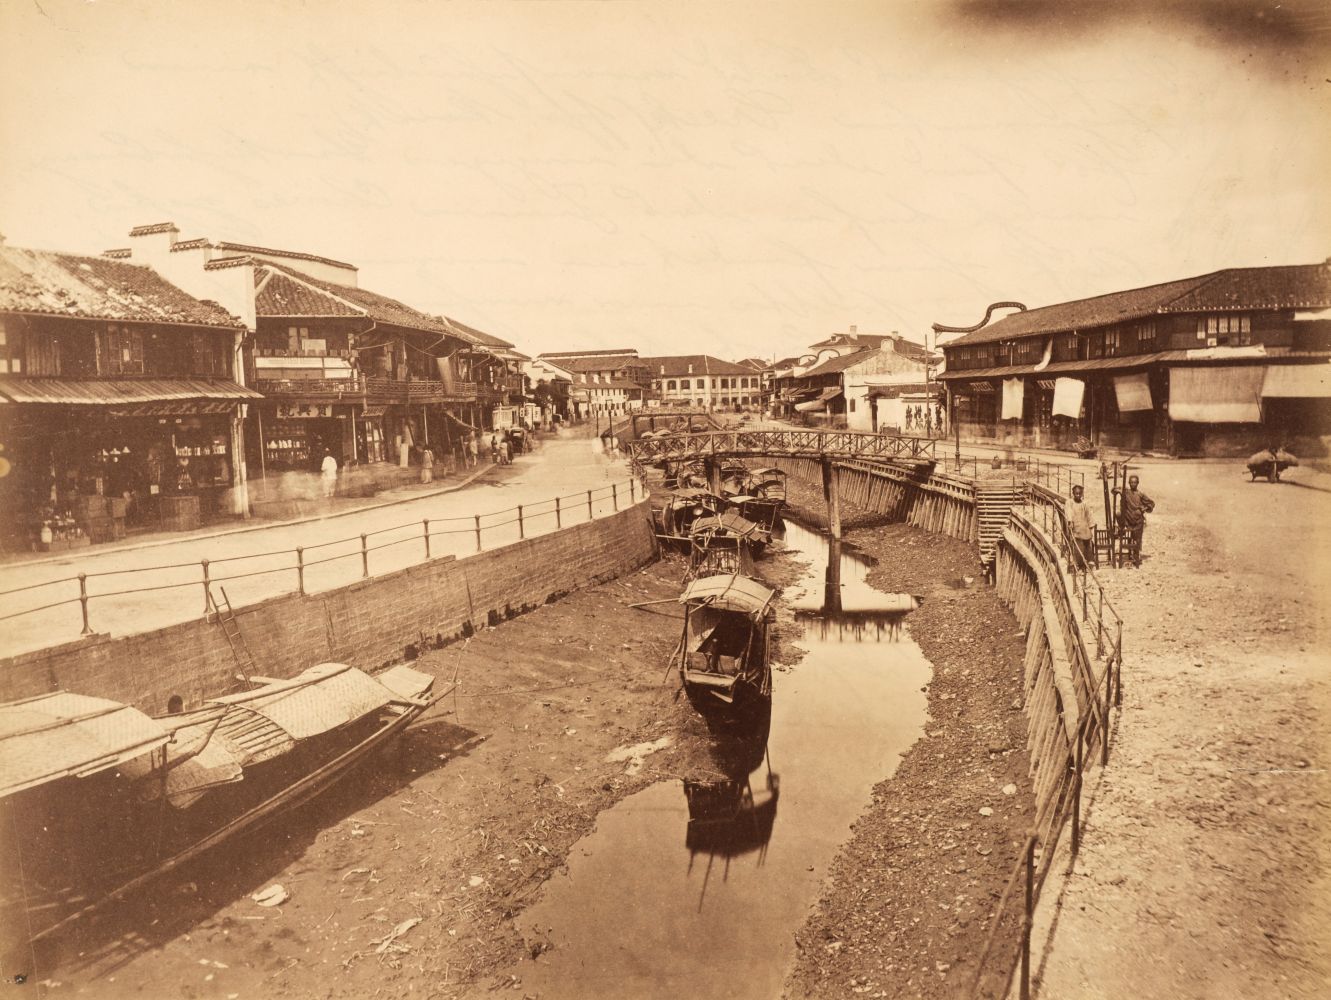 China. Waterway leading into Chinese interior, Shanghai, c. 1870